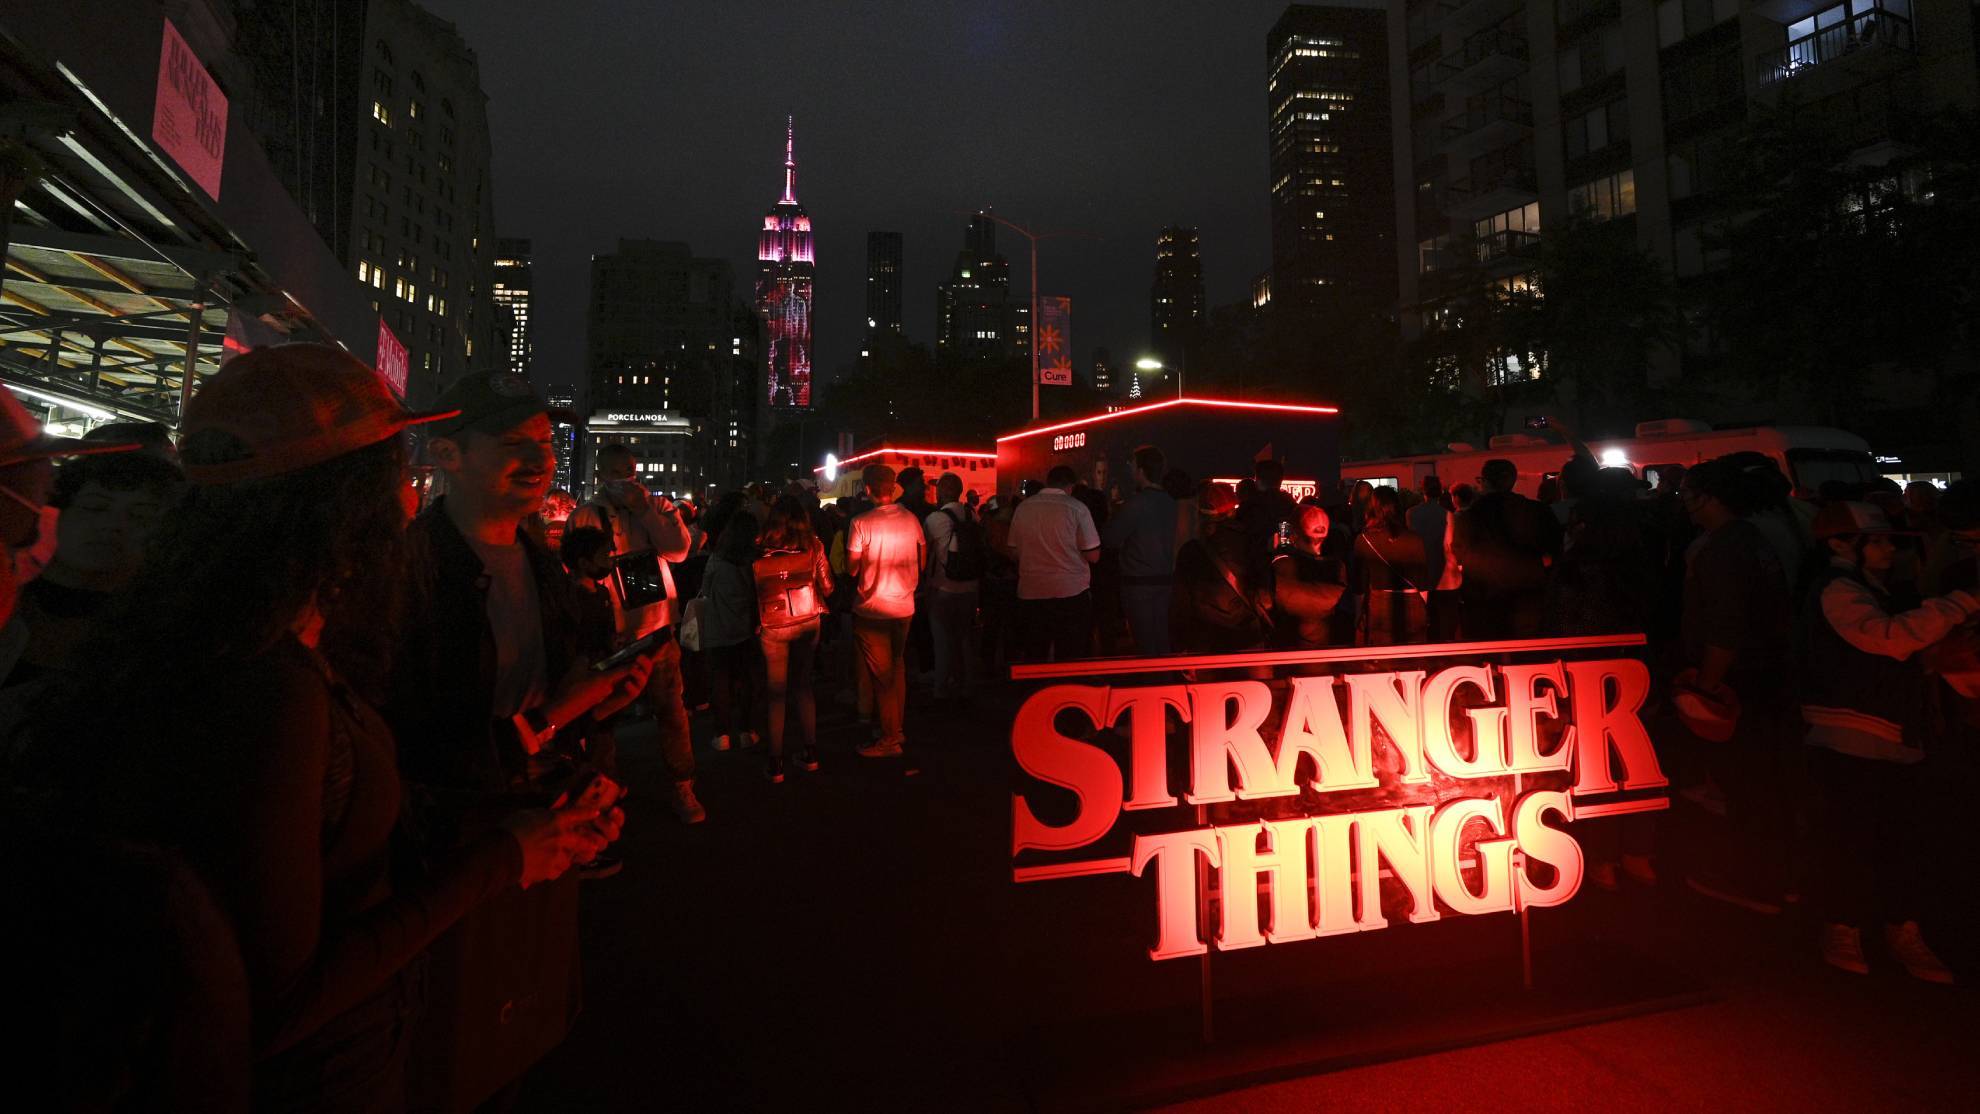 Stranger Things 4, volumen 2: cuándo se estrena, tráiler, horarios en el  mundo y novedades de la serie de Netflix, Cuándo sale y cómo ver, Personajes, Reparto